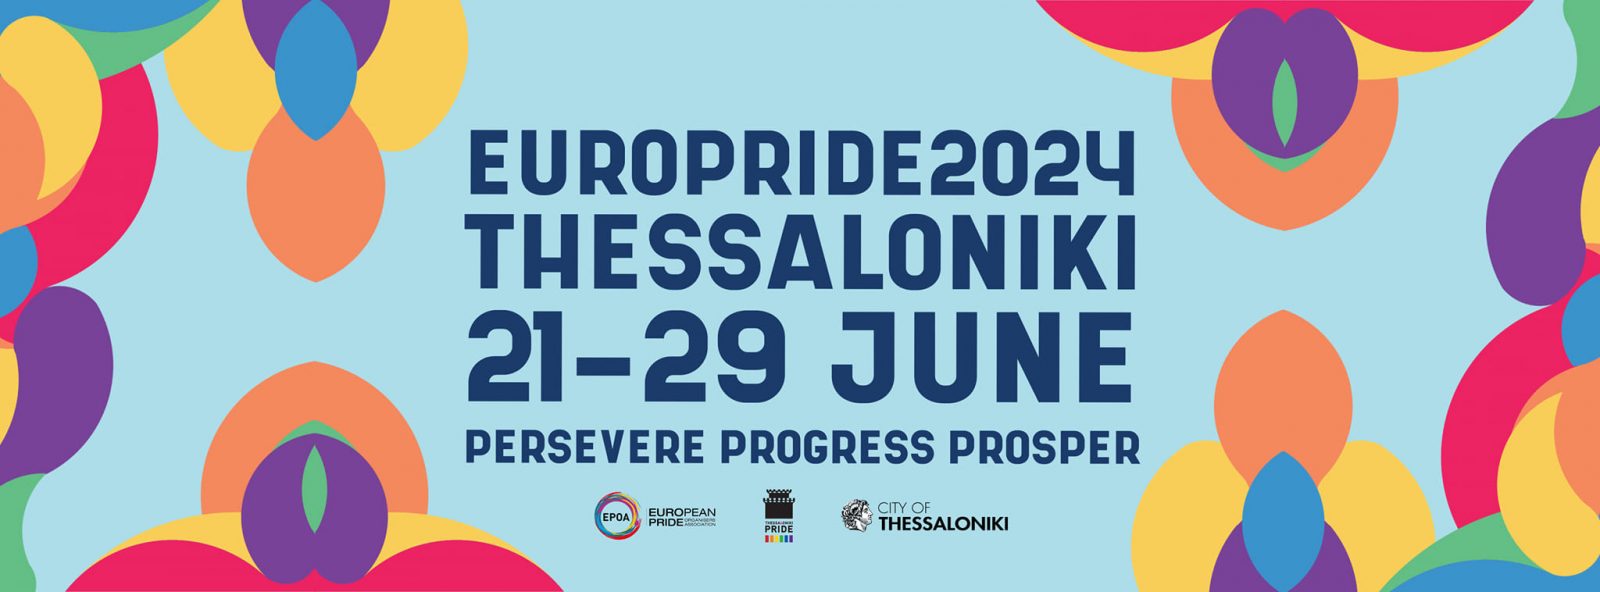 EuroPride 2024 Thessaloniki